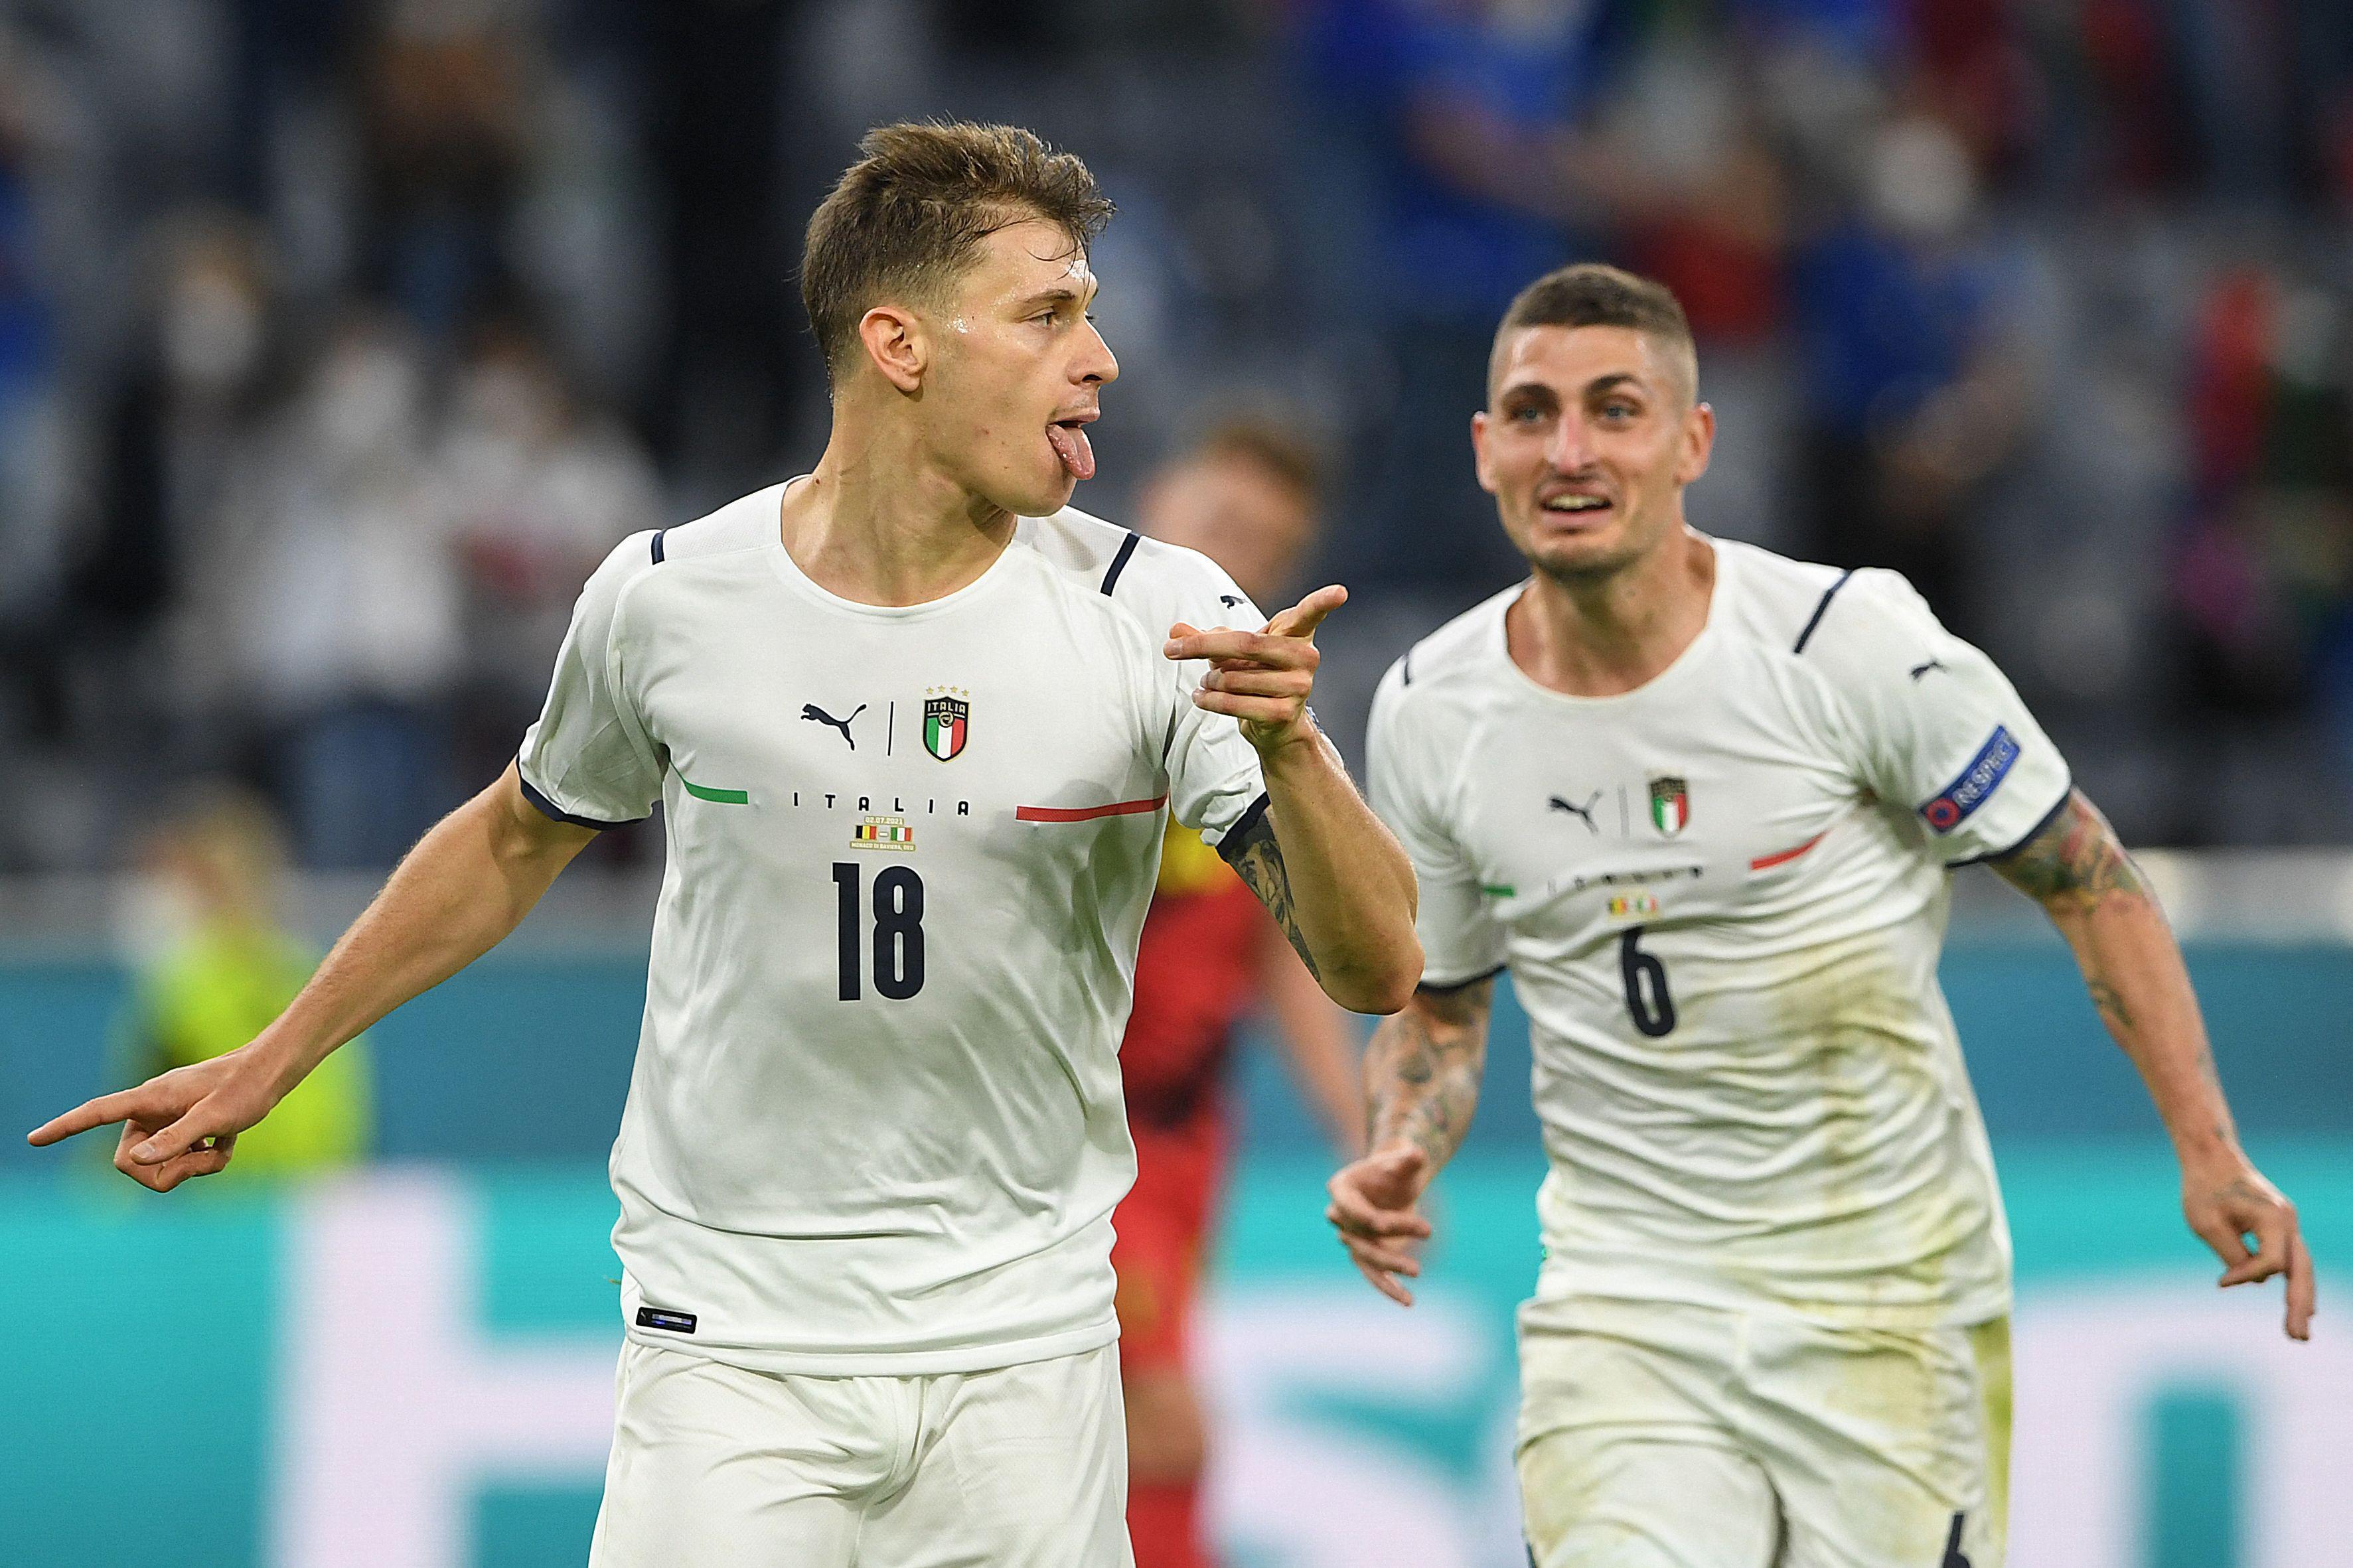 (ÖZET) Belçika - İtalya maç sonucu: 1-2 | EURO 2020